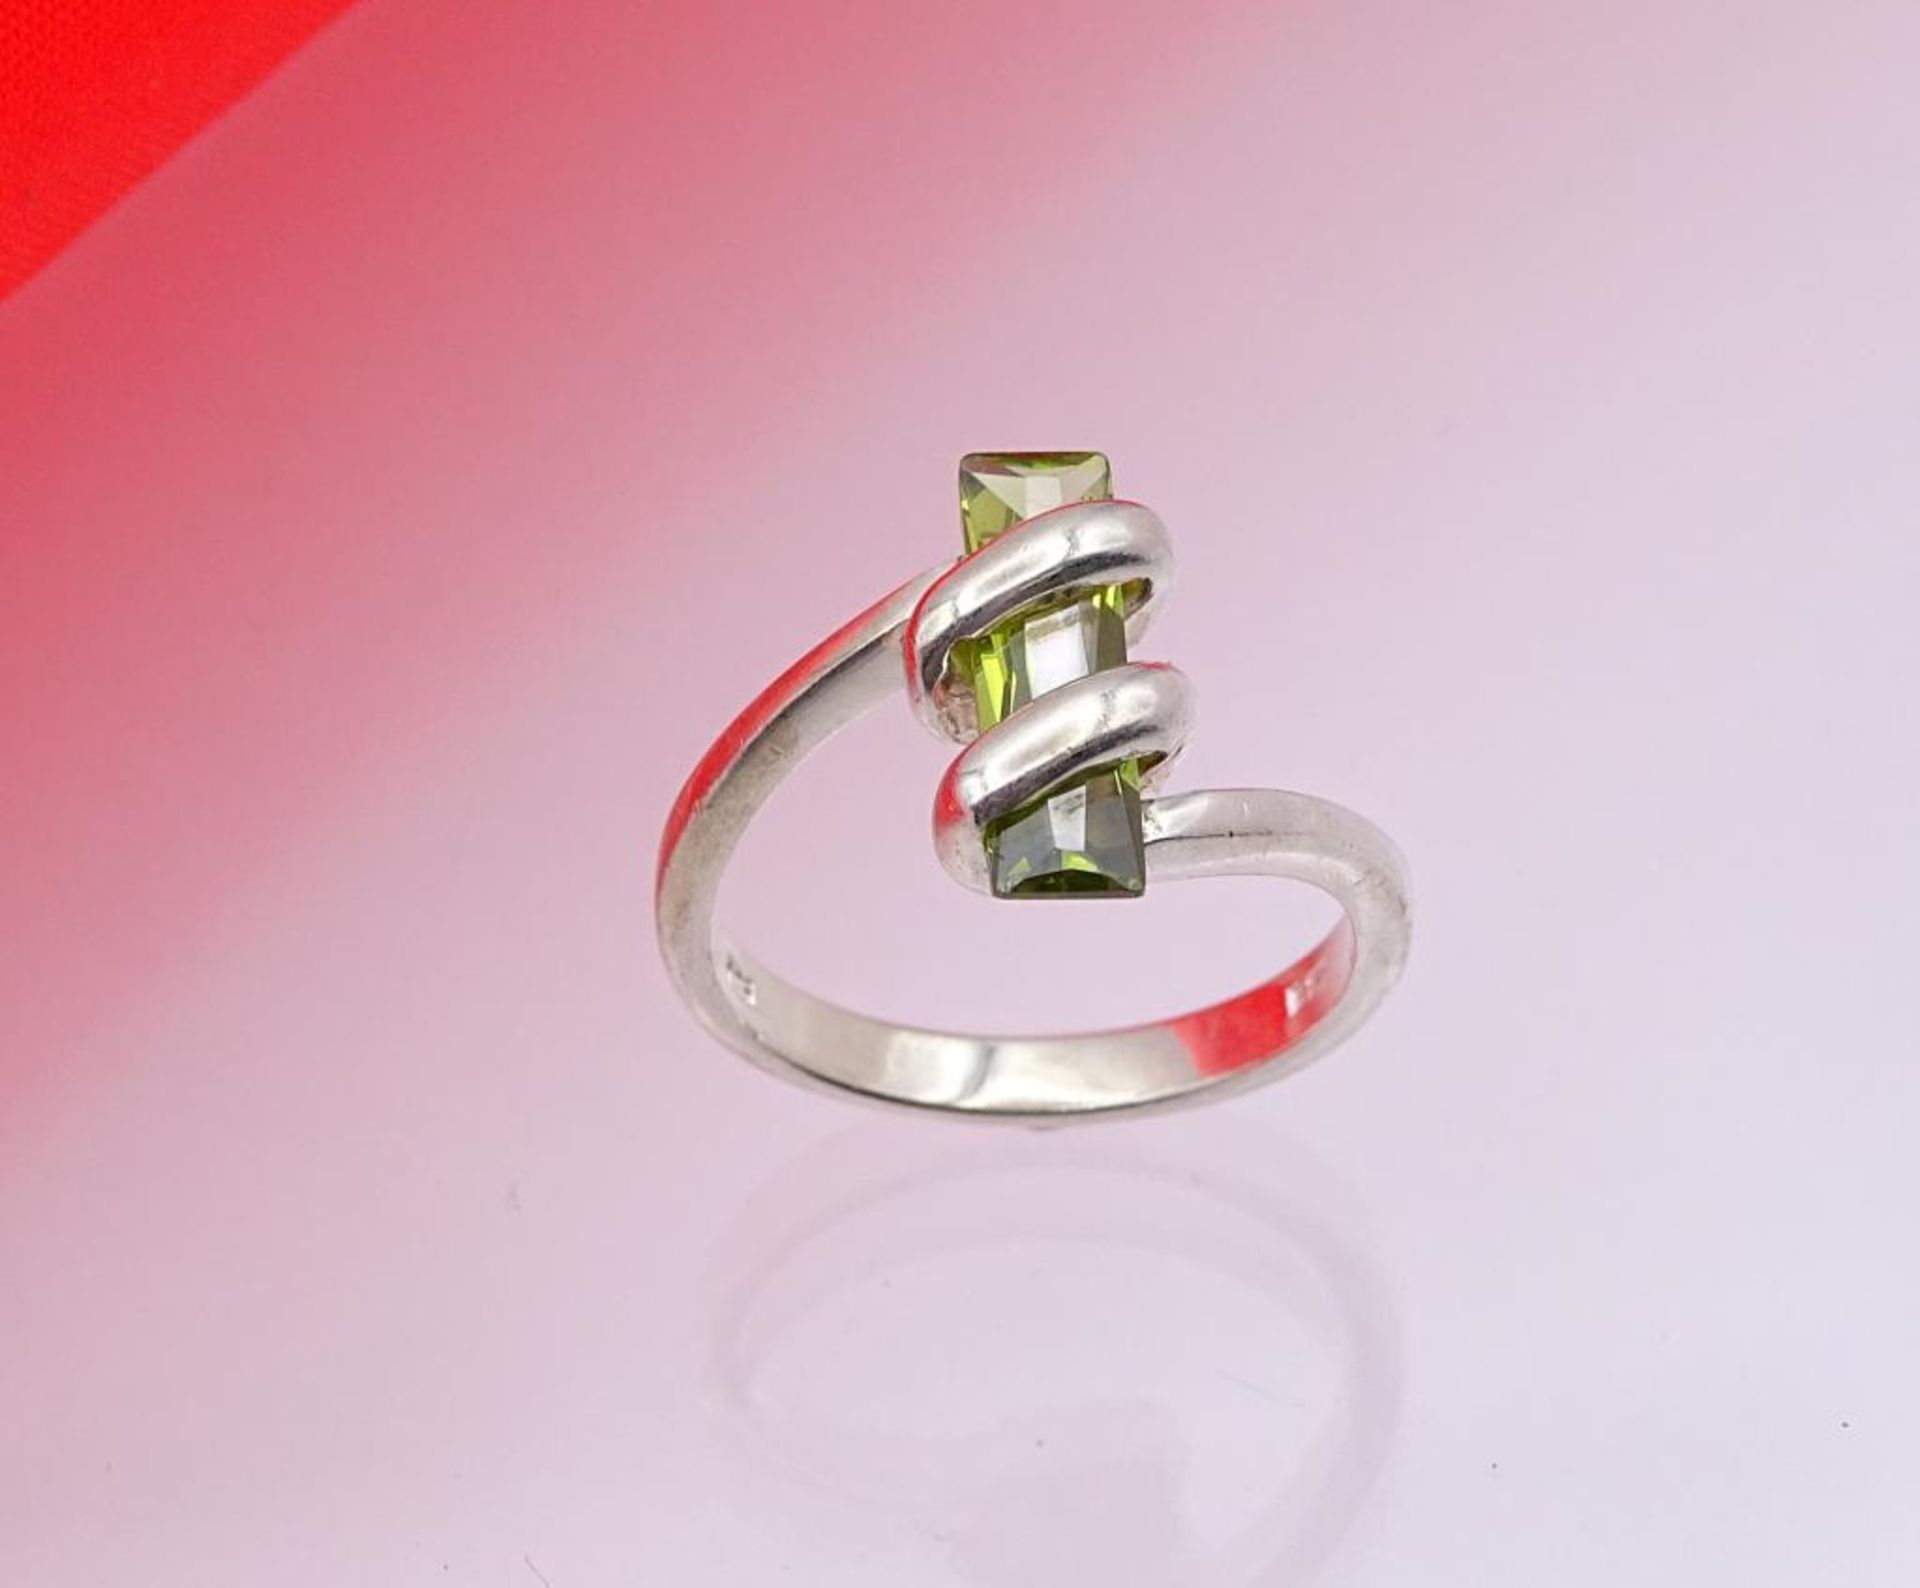 925er Silber Ring mit einen grünen facettierten Stein, 3,7gr., RG 5